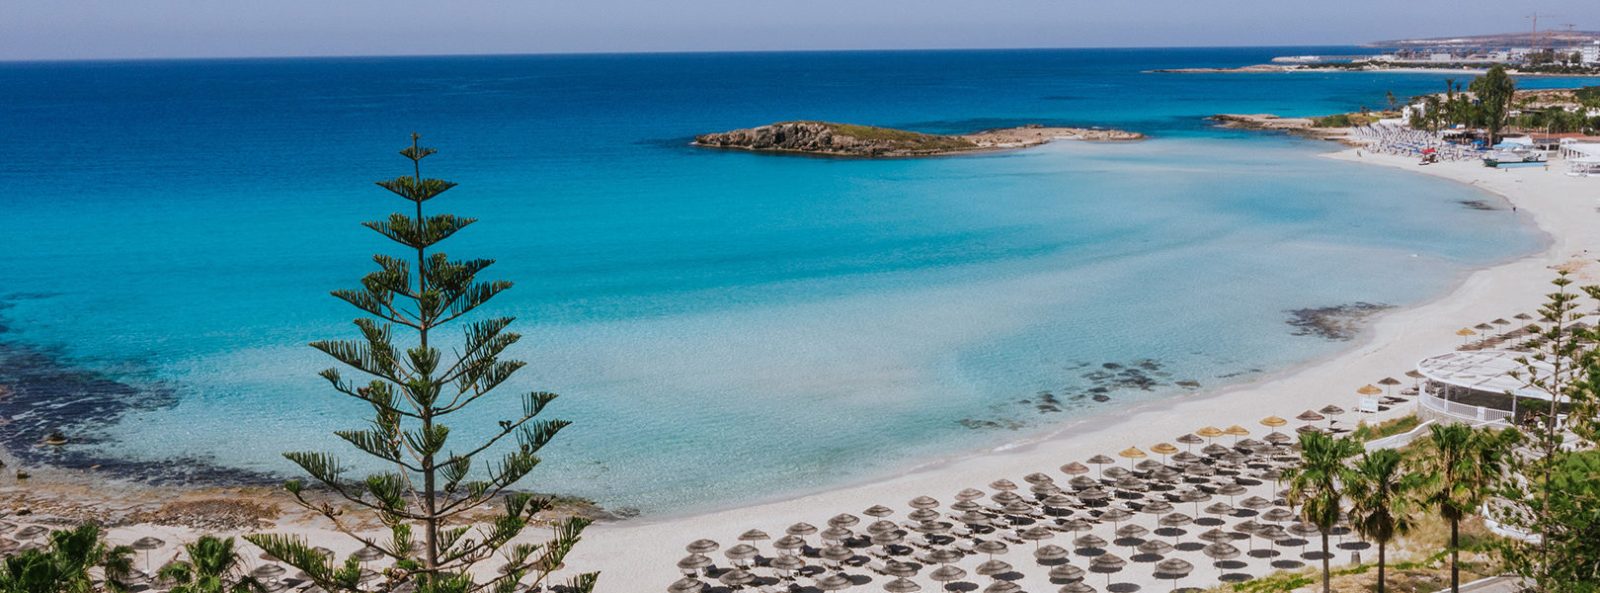 Пляж Нисси на Кипре